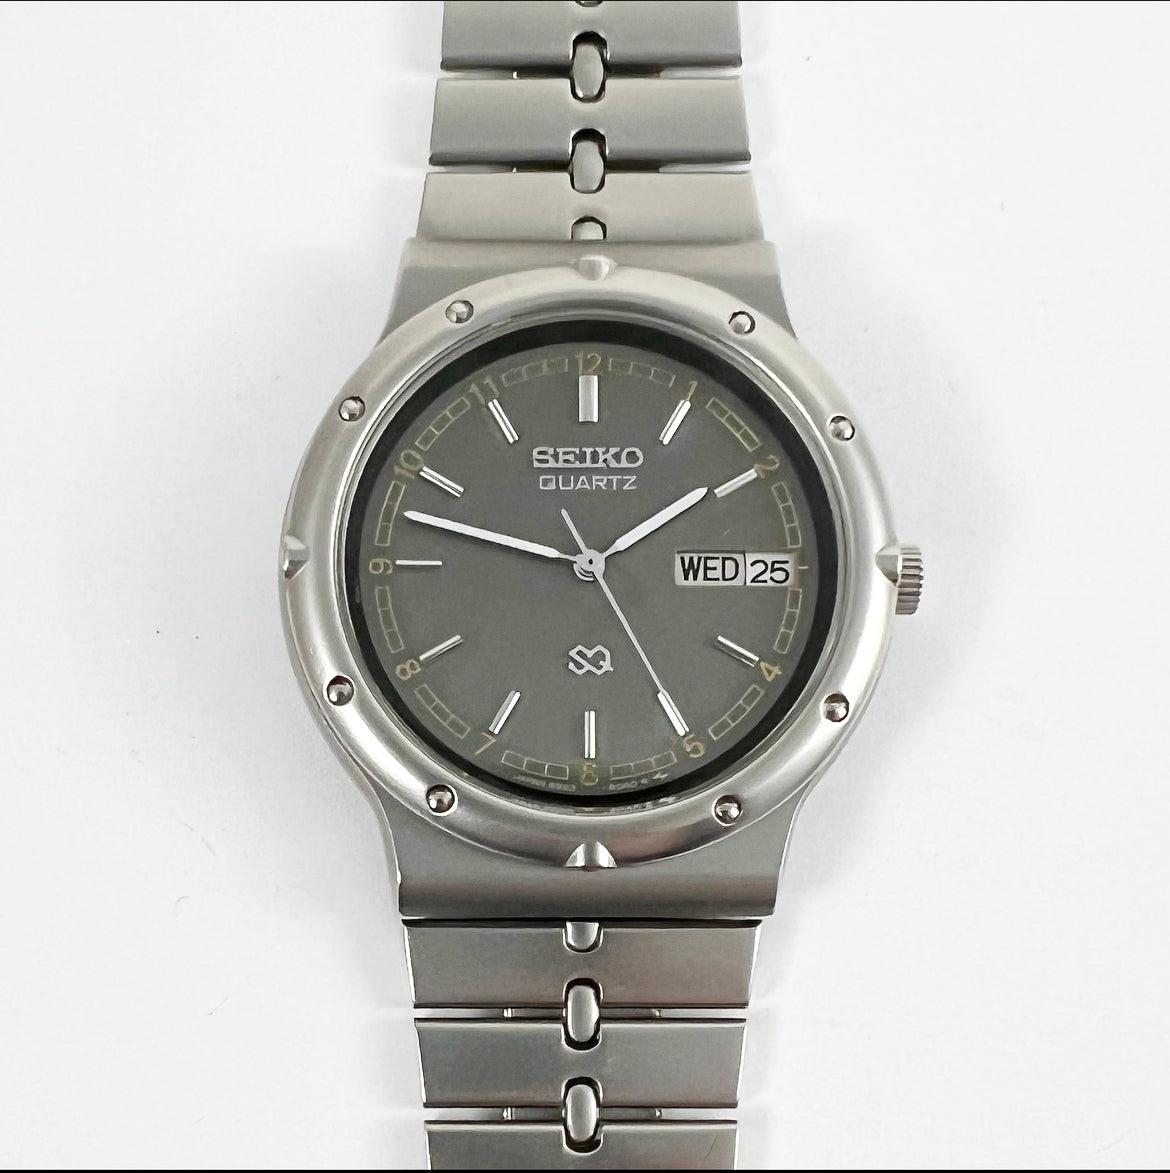 1984 Seiko SQ 6923-6020 Quartz – Mornington Watches